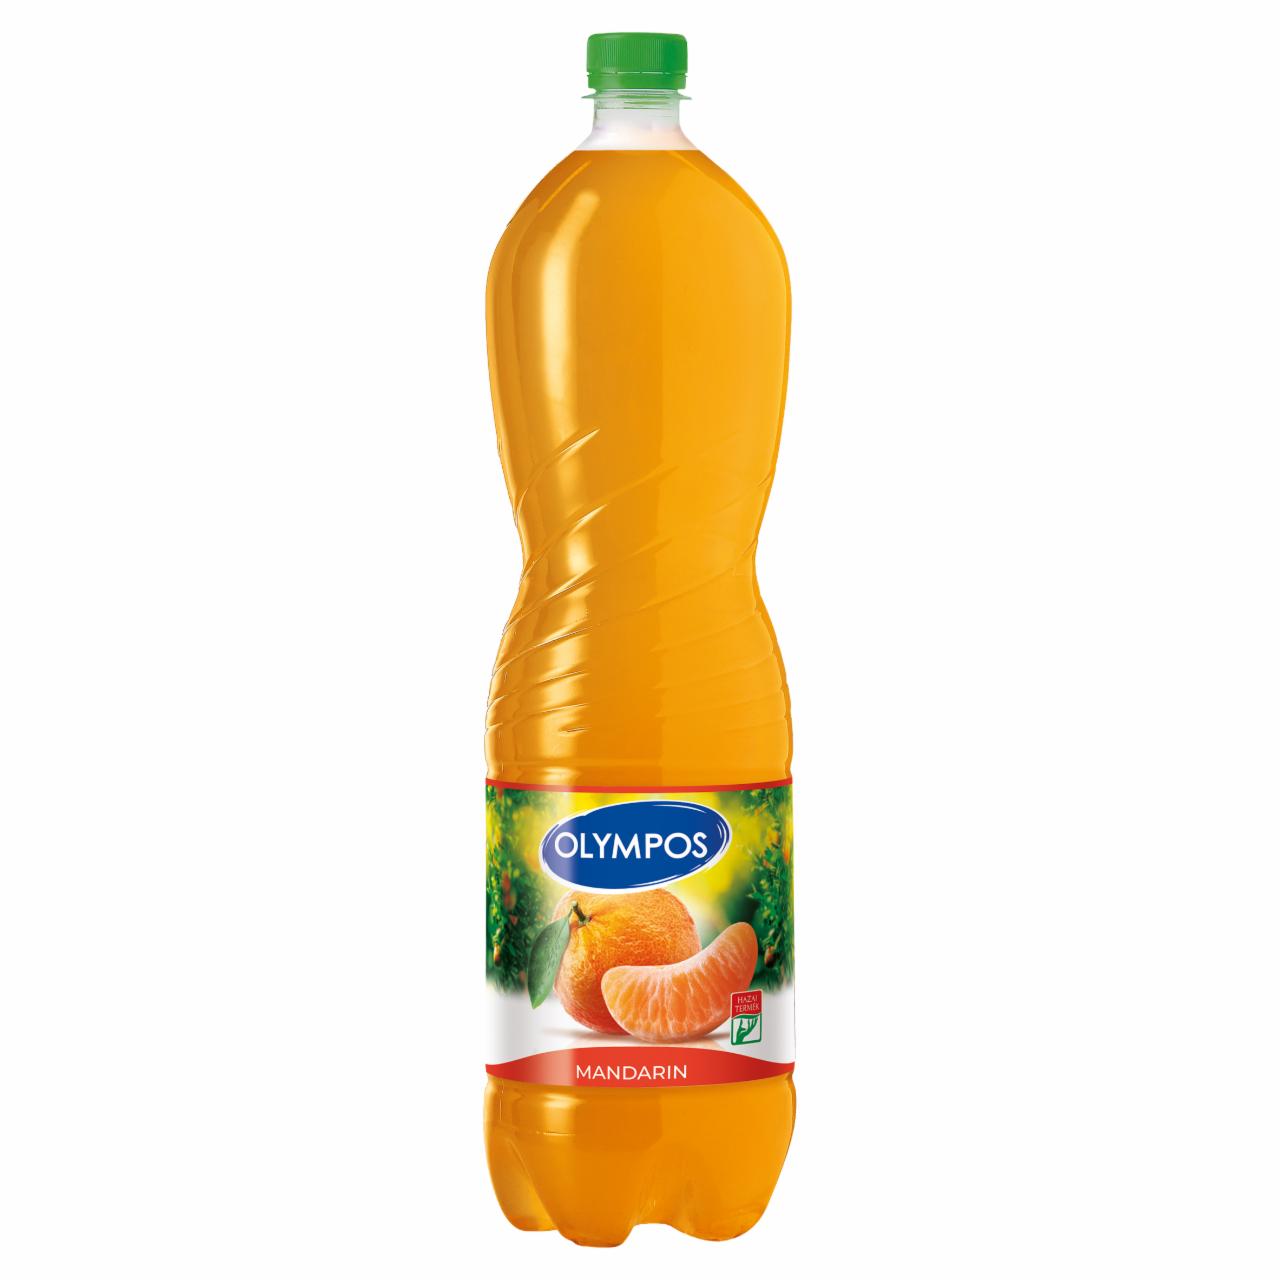 Képek - Olympos mandarin üdítőital 1,5 l